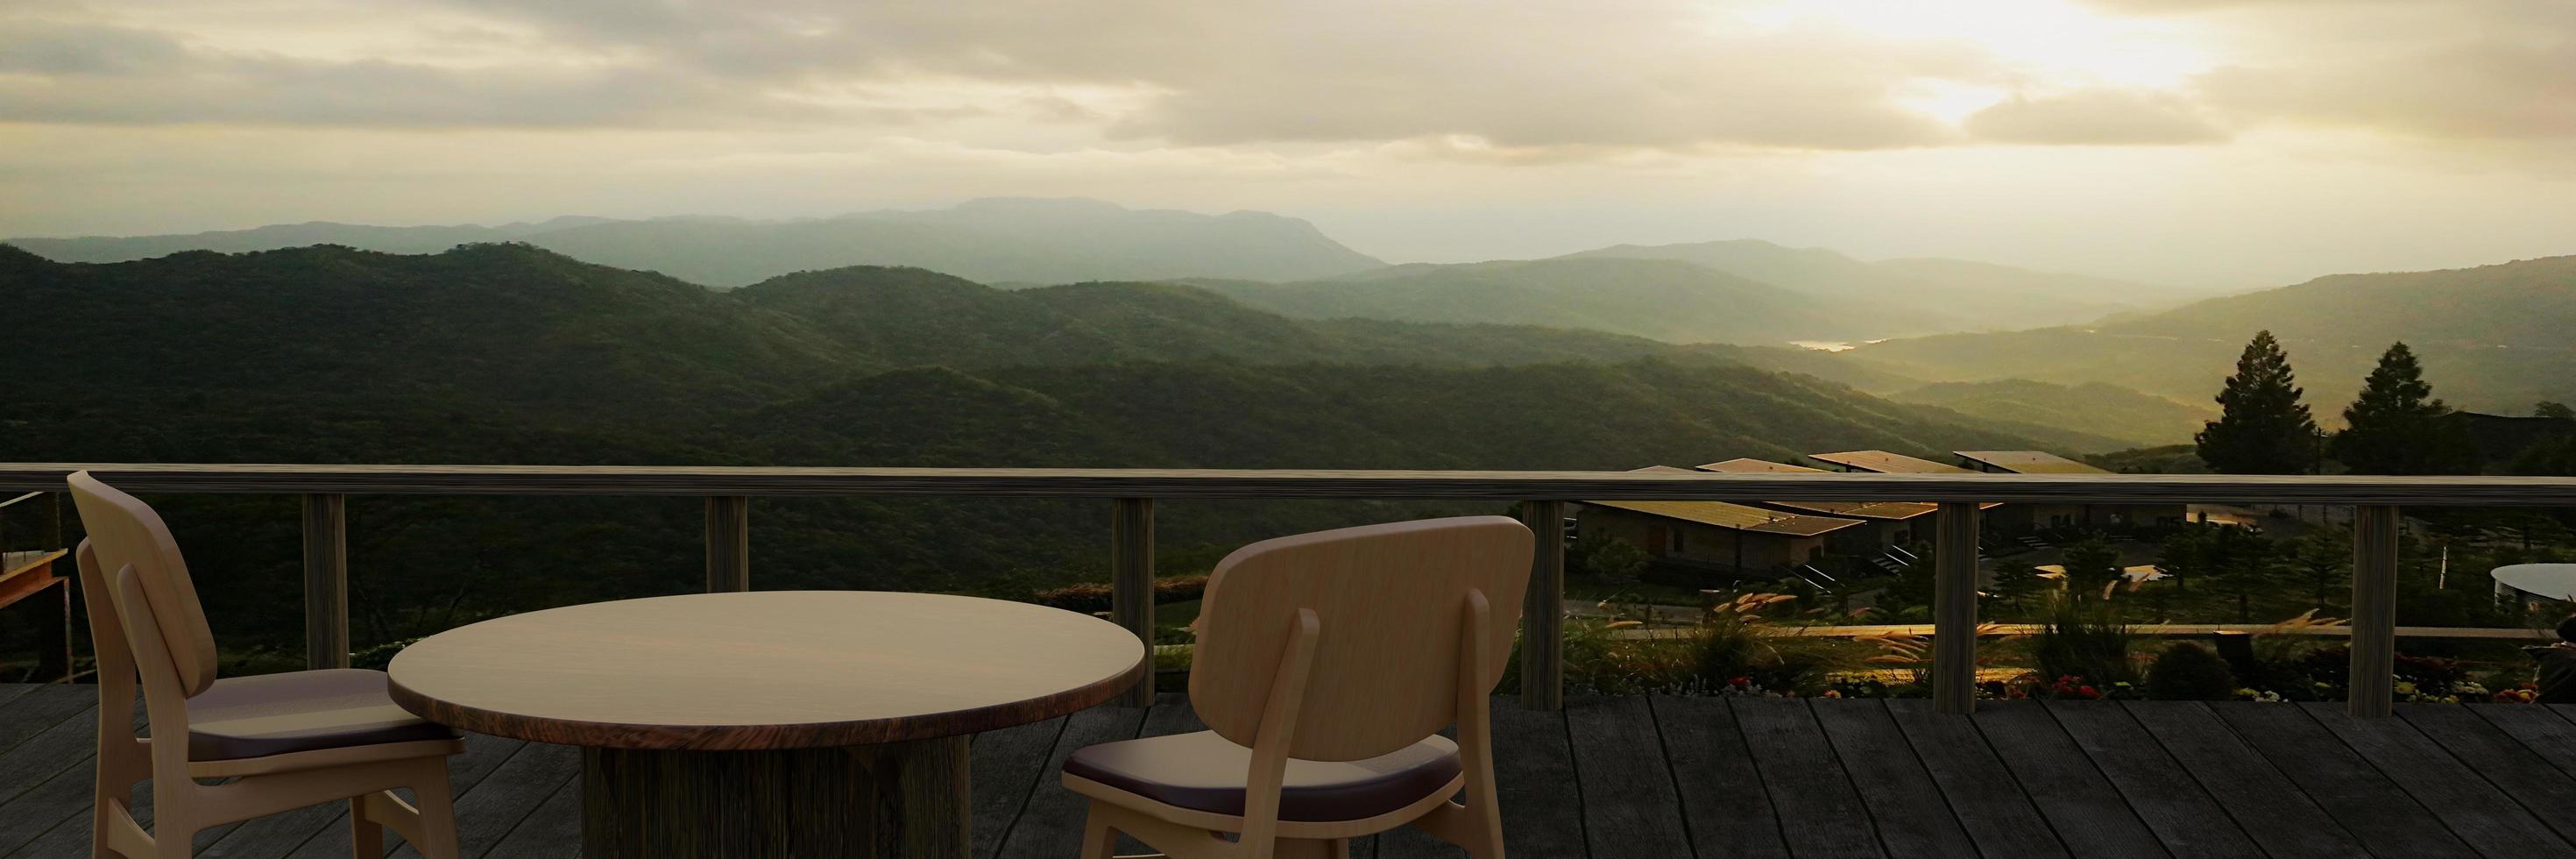 mesas y sillas de madera para relajarse en el balcón o terraza con tablones de madera. el restaurante en la montaña tiene una vista de la colina y la niebla a la luz del sol de la mañana. representación 3d foto